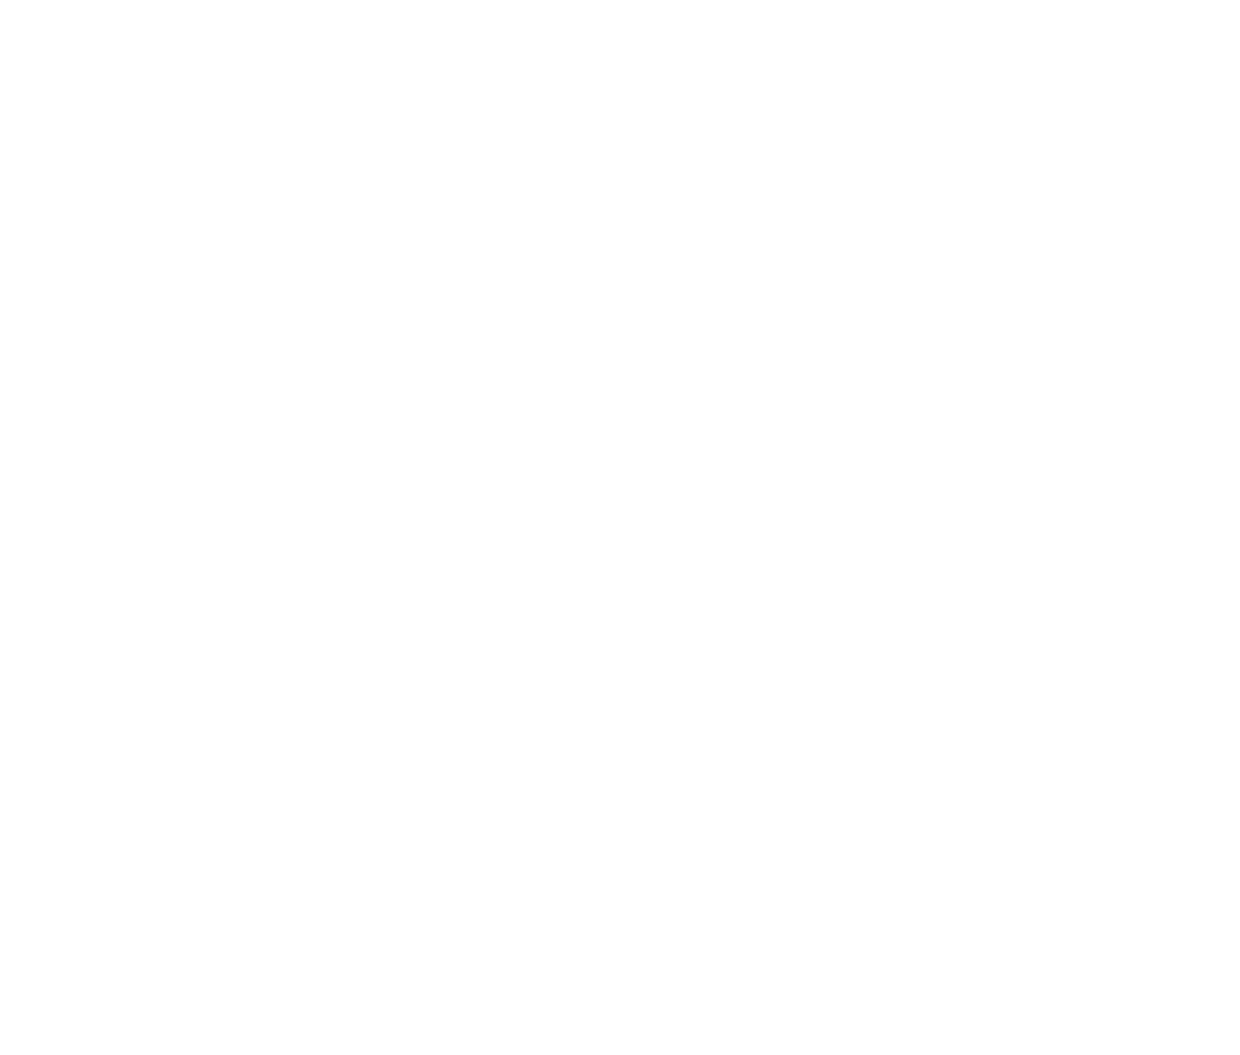 Global Benelux